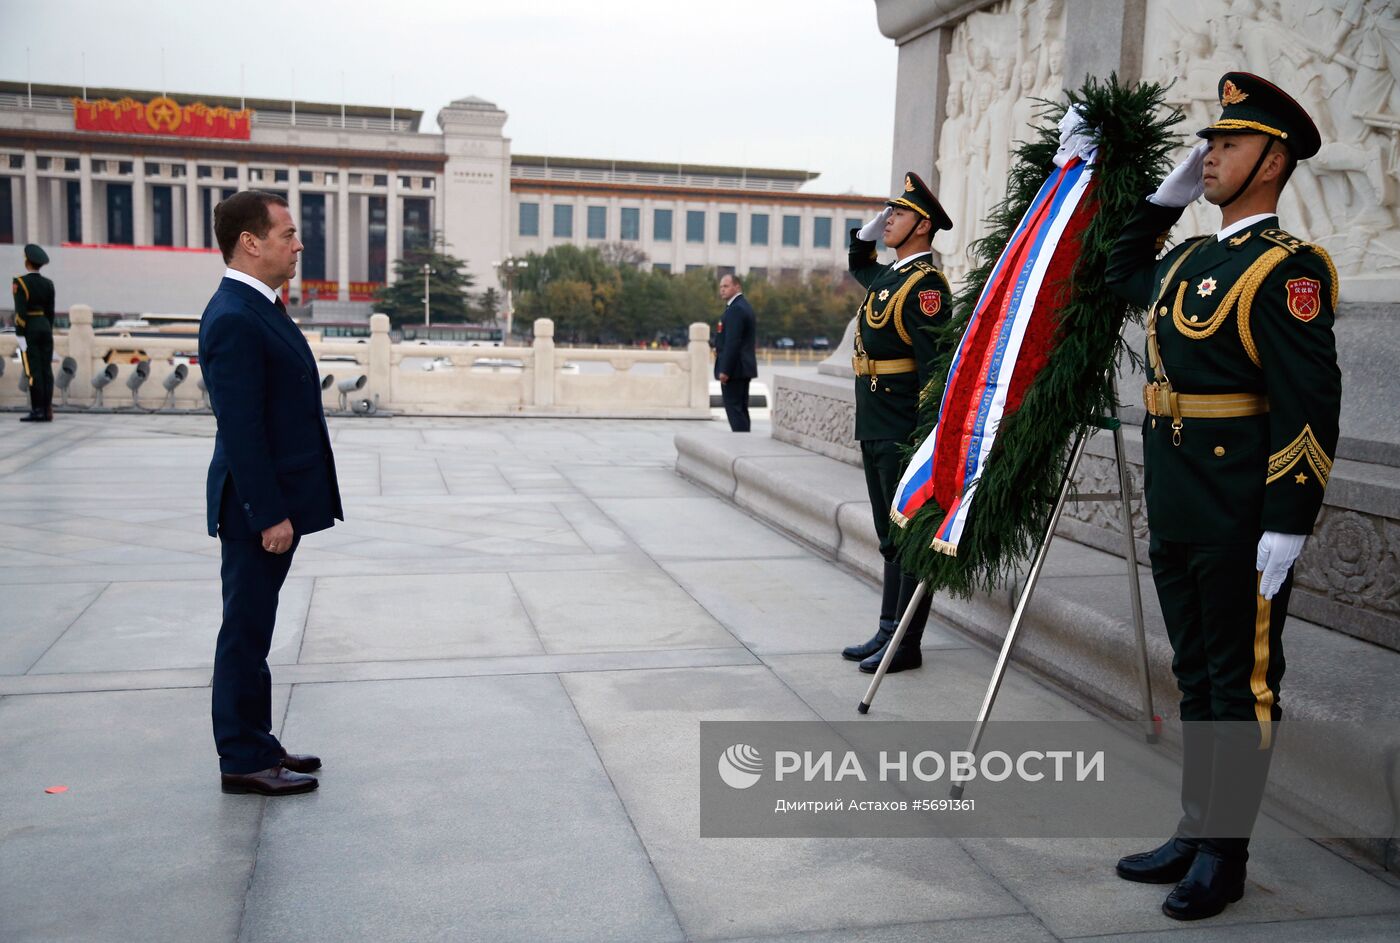 Официальный визит премьер-министра РФ Д. Медведева в КНР